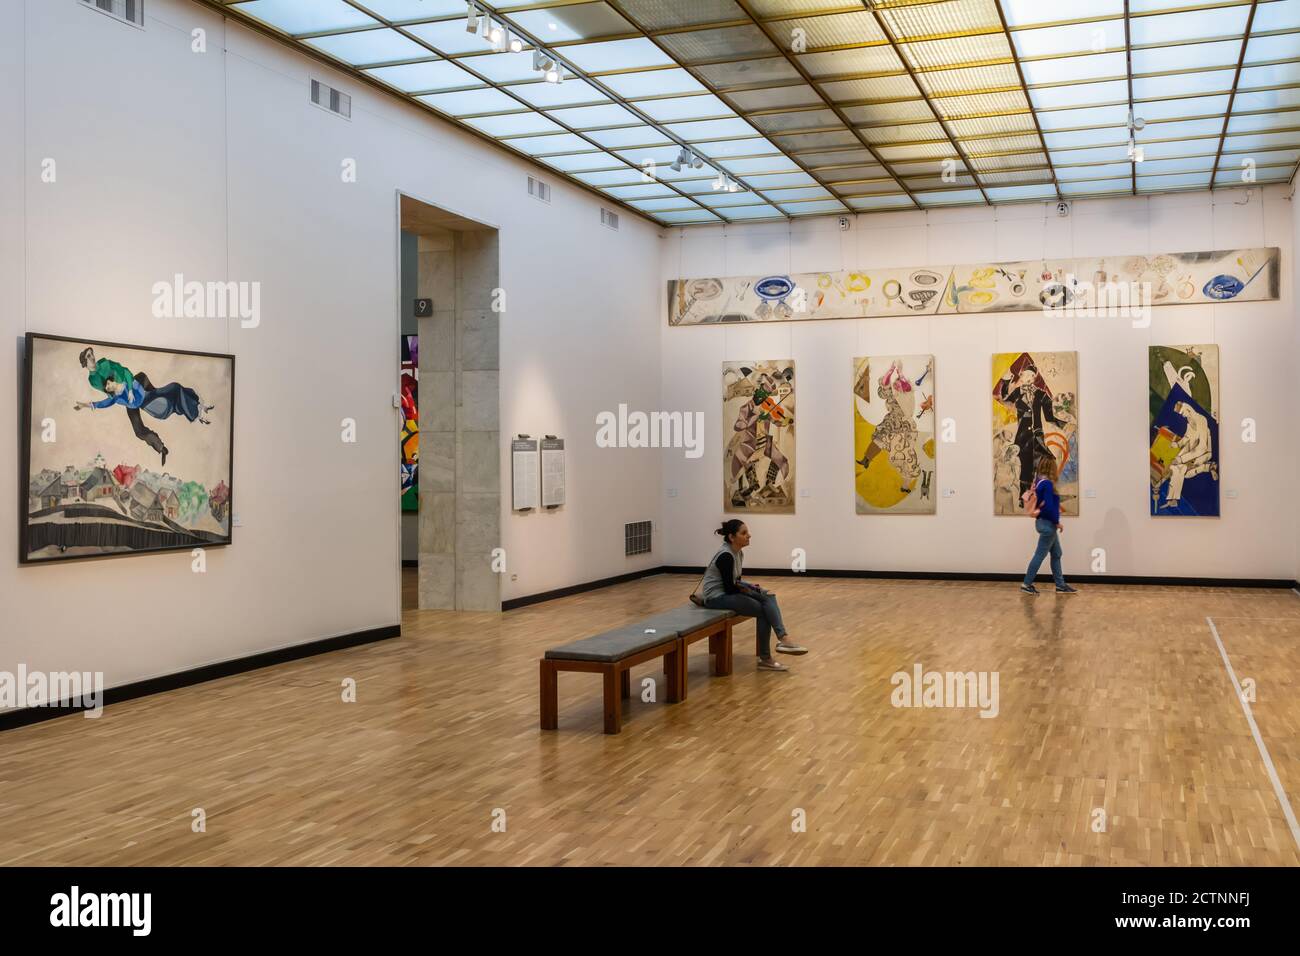 Moscou, Russie – 7 juillet 2017. Vue intérieure de la galerie New Tretiakov à Moscou. Vue sur un hall d'exposition avec des personnes et des œuvres d'art. Banque D'Images